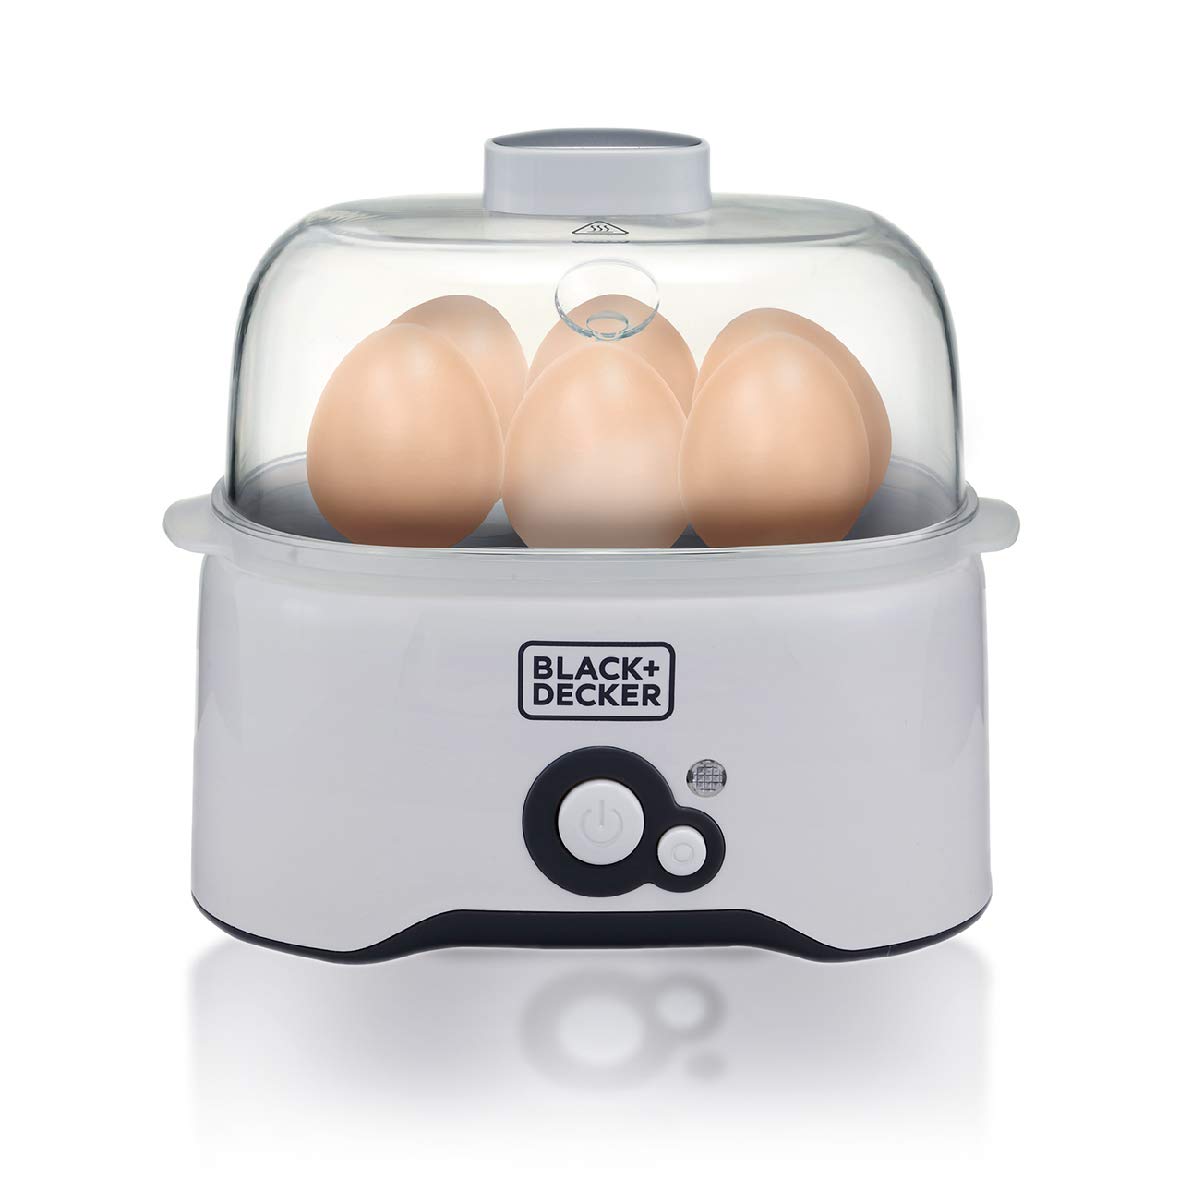  Black+decker egg maker eg200